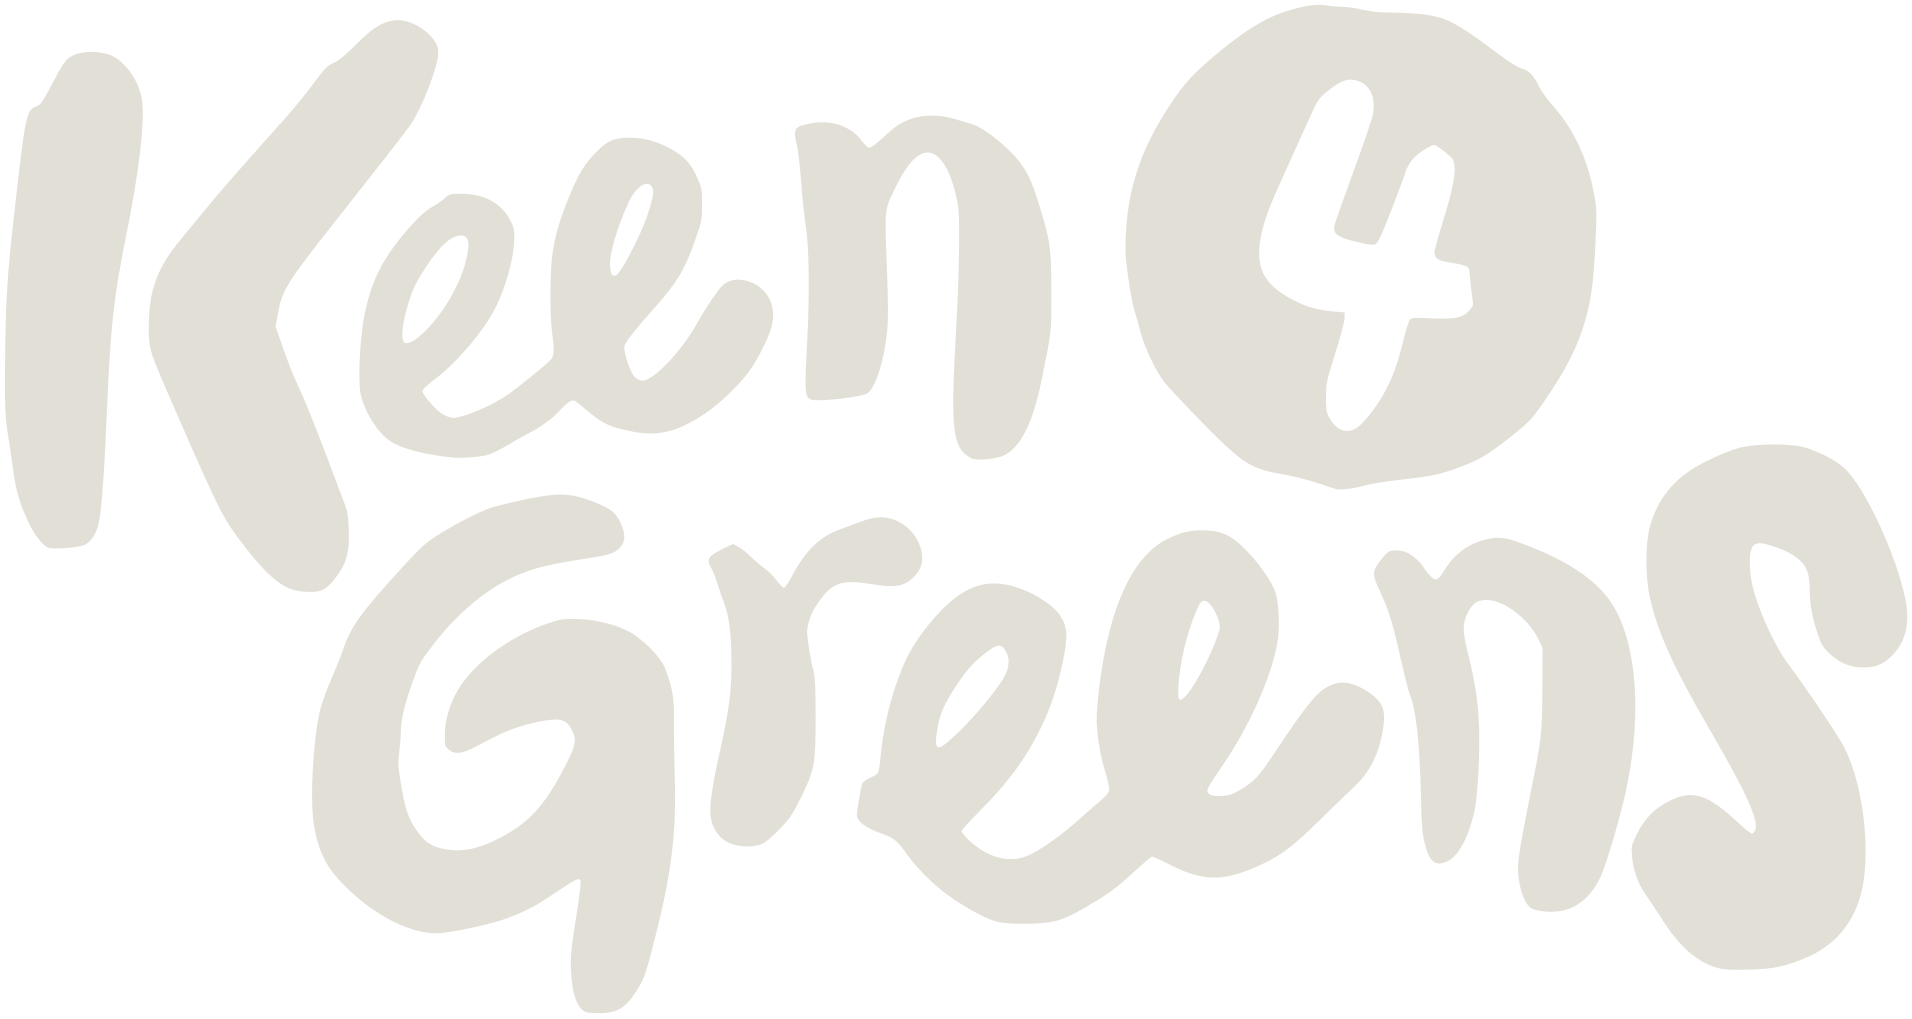 Keen 4 Greens